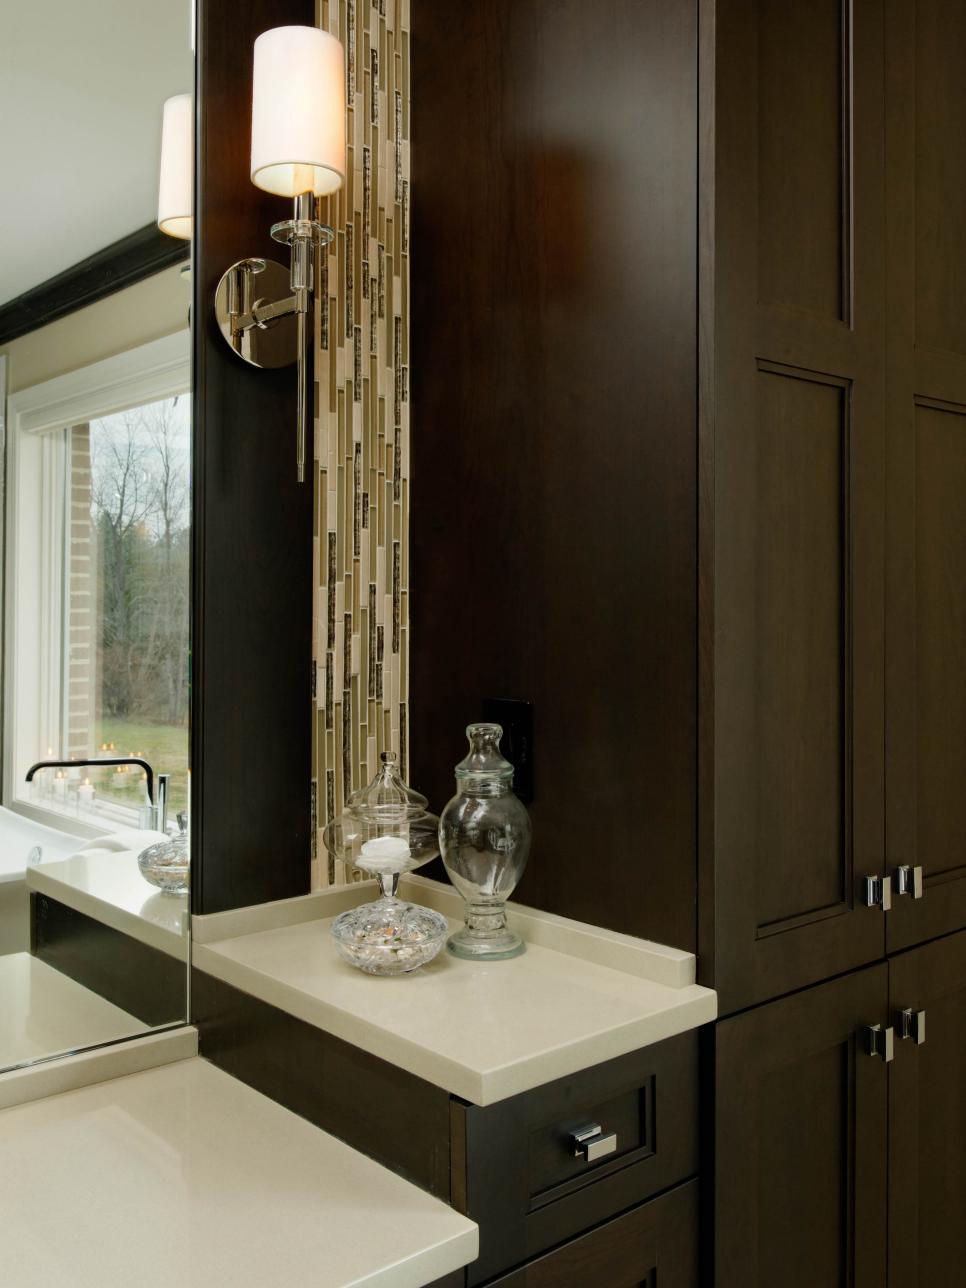 Brown Bathroom Cabinets With Vertical Glass Tile Backsplash